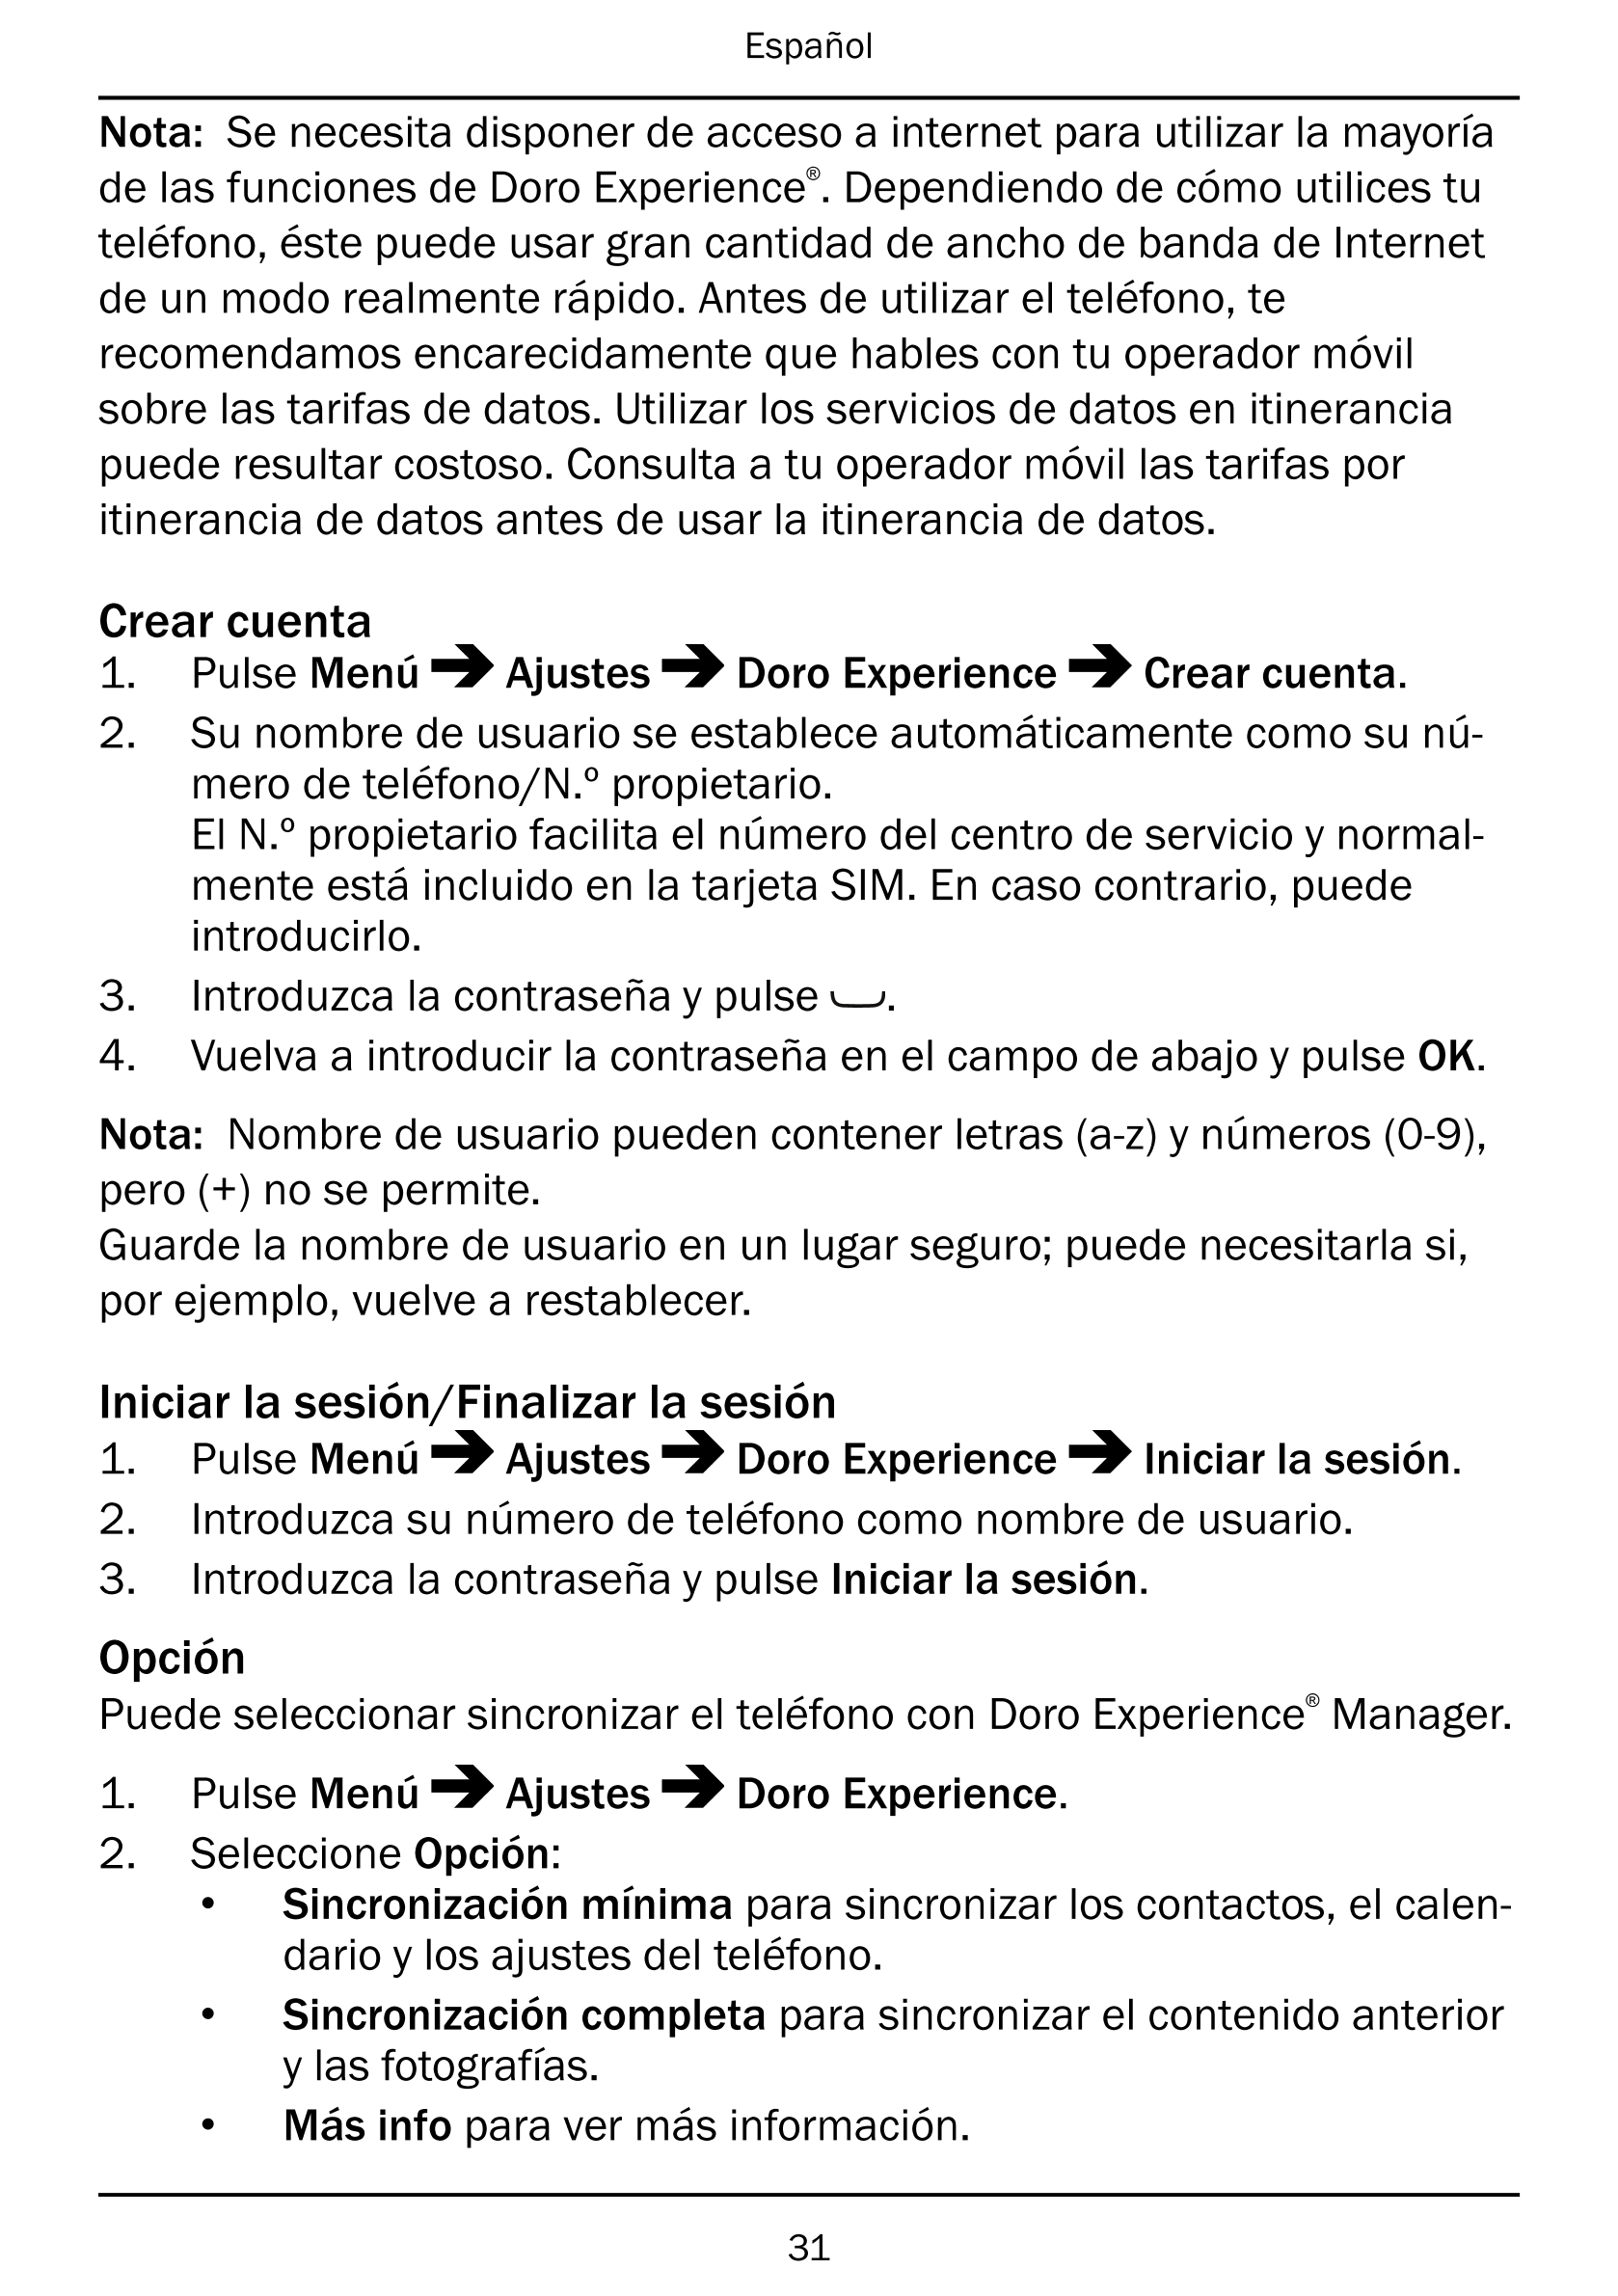 Español
Nota: Se necesita disponer de acceso a internet para utilizar la mayoría
de las funciones de Doro Experience®. Dependien